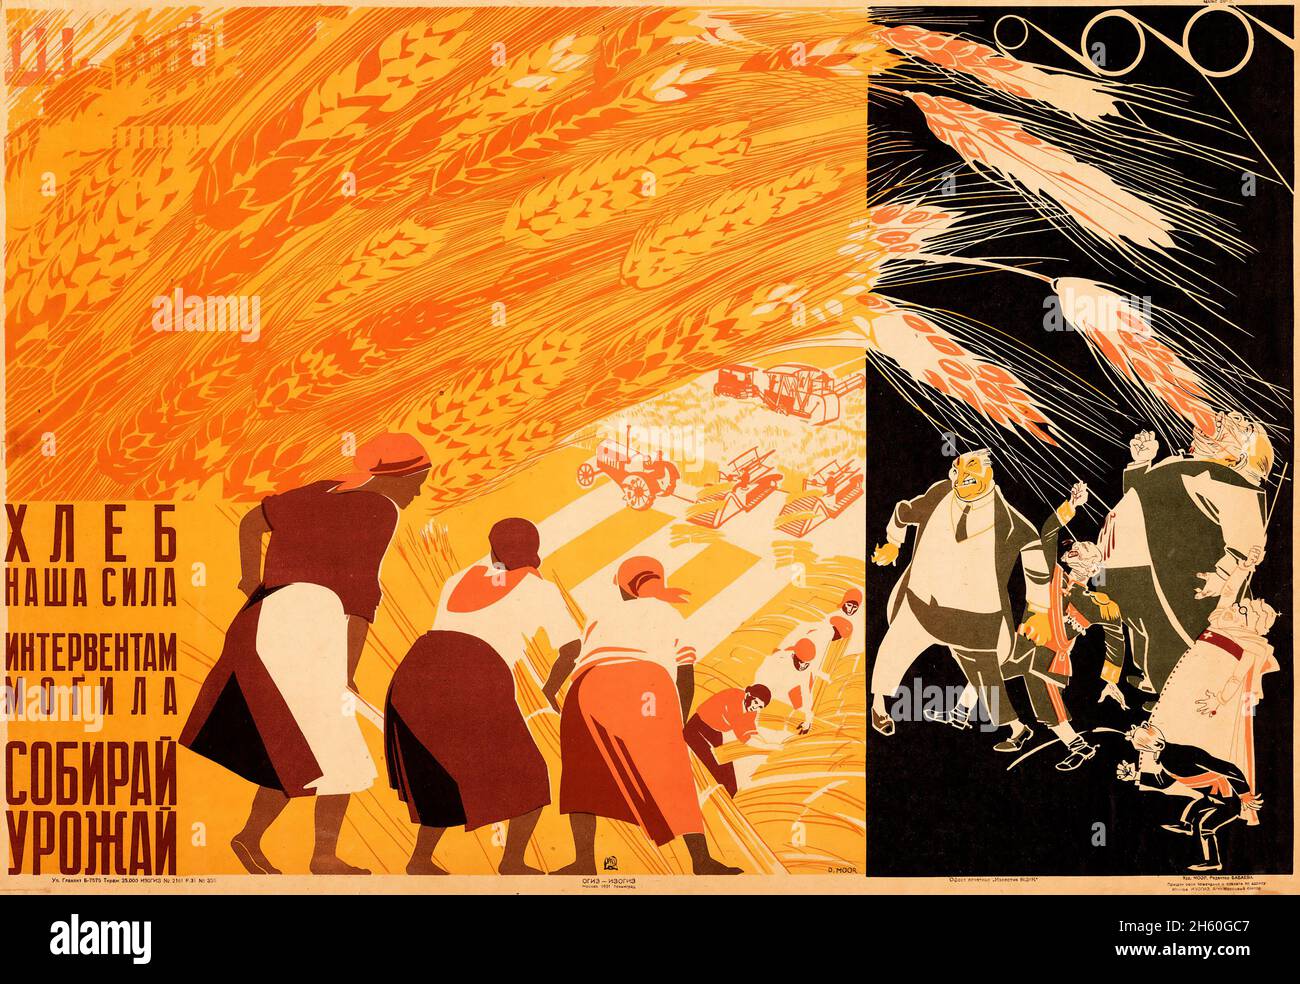 Agricoltura sovietica contro i reazionisti (1931). Poster Propaganda russo. Foto Stock